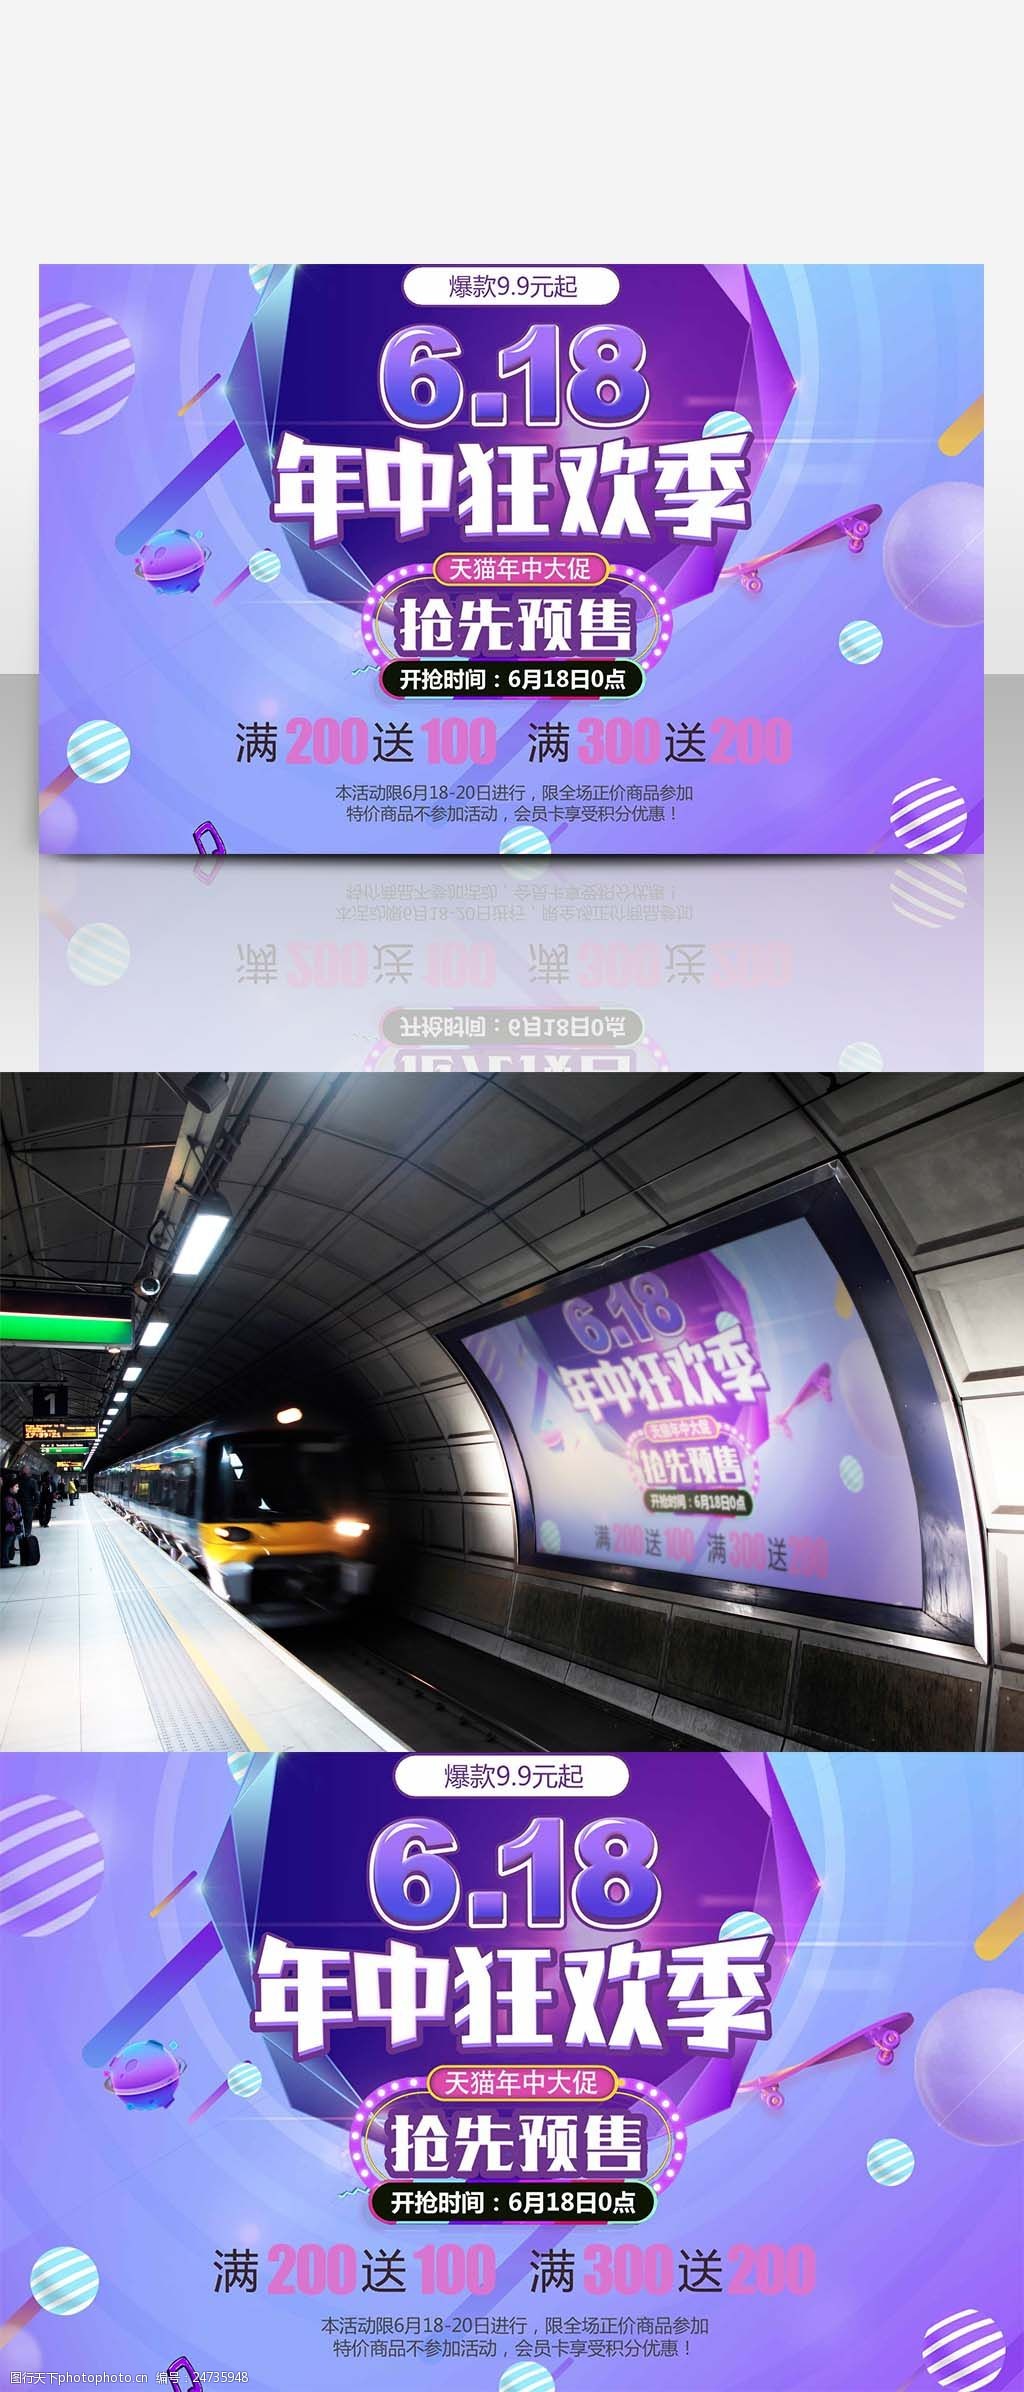 618年中狂欢紫色炫彩商业海报设计模板